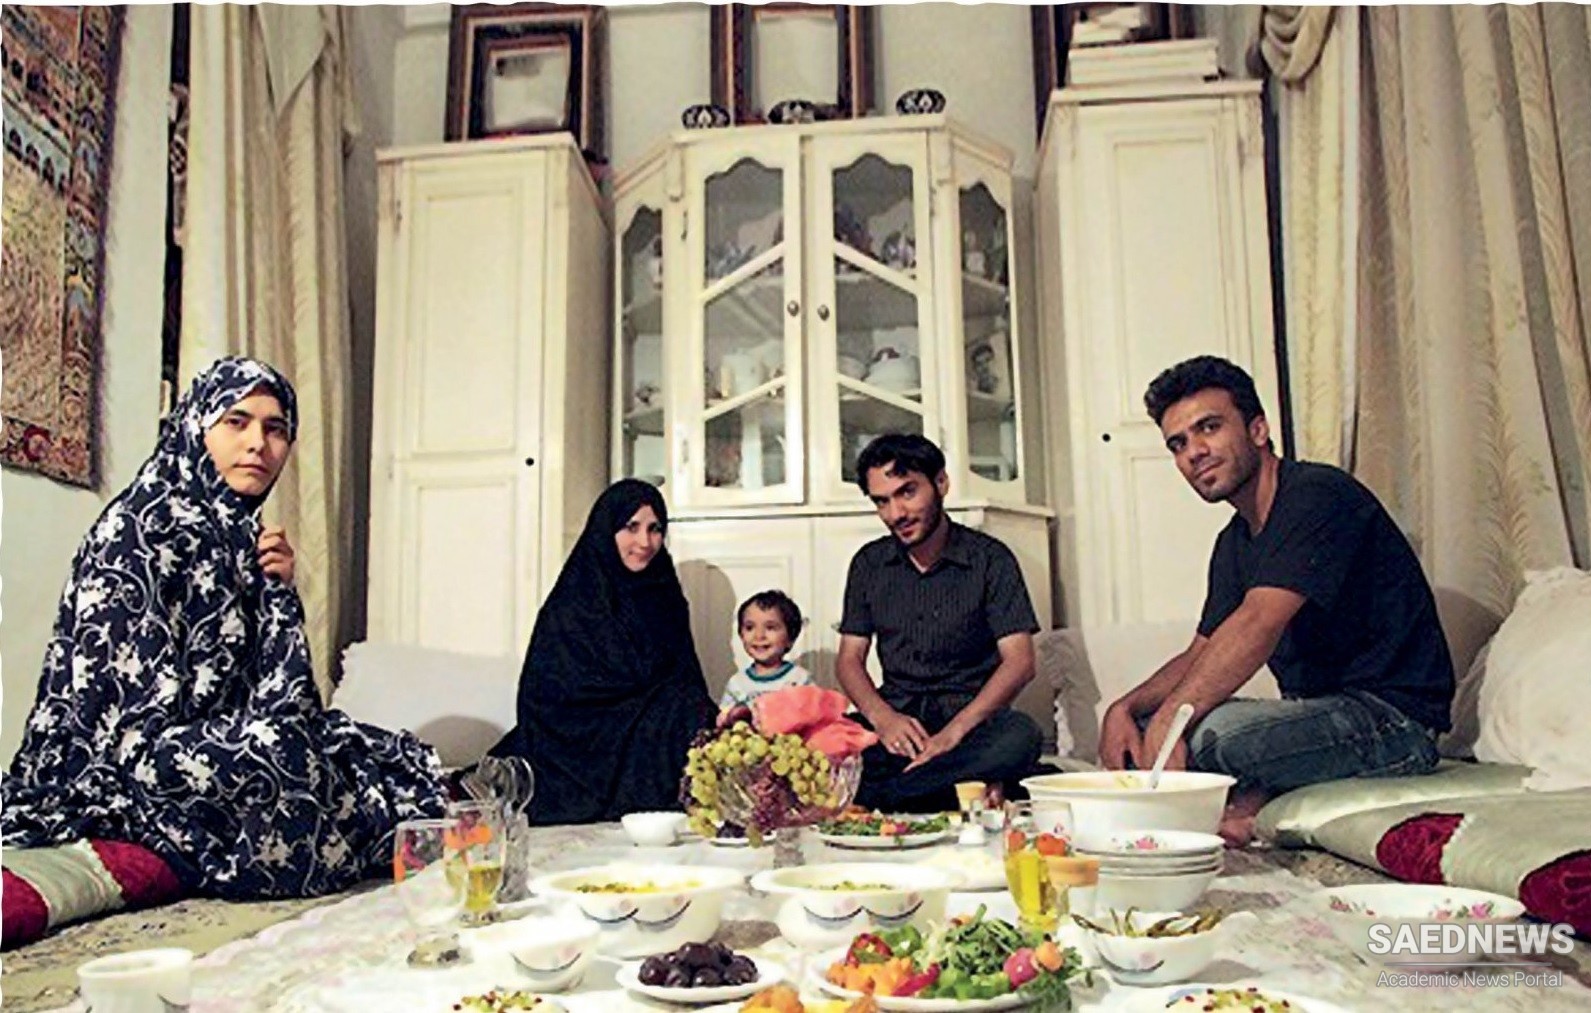 पारिवारिक बैठकें: ईरानी परिवारों में रात्रिभोज का निमंत्रण